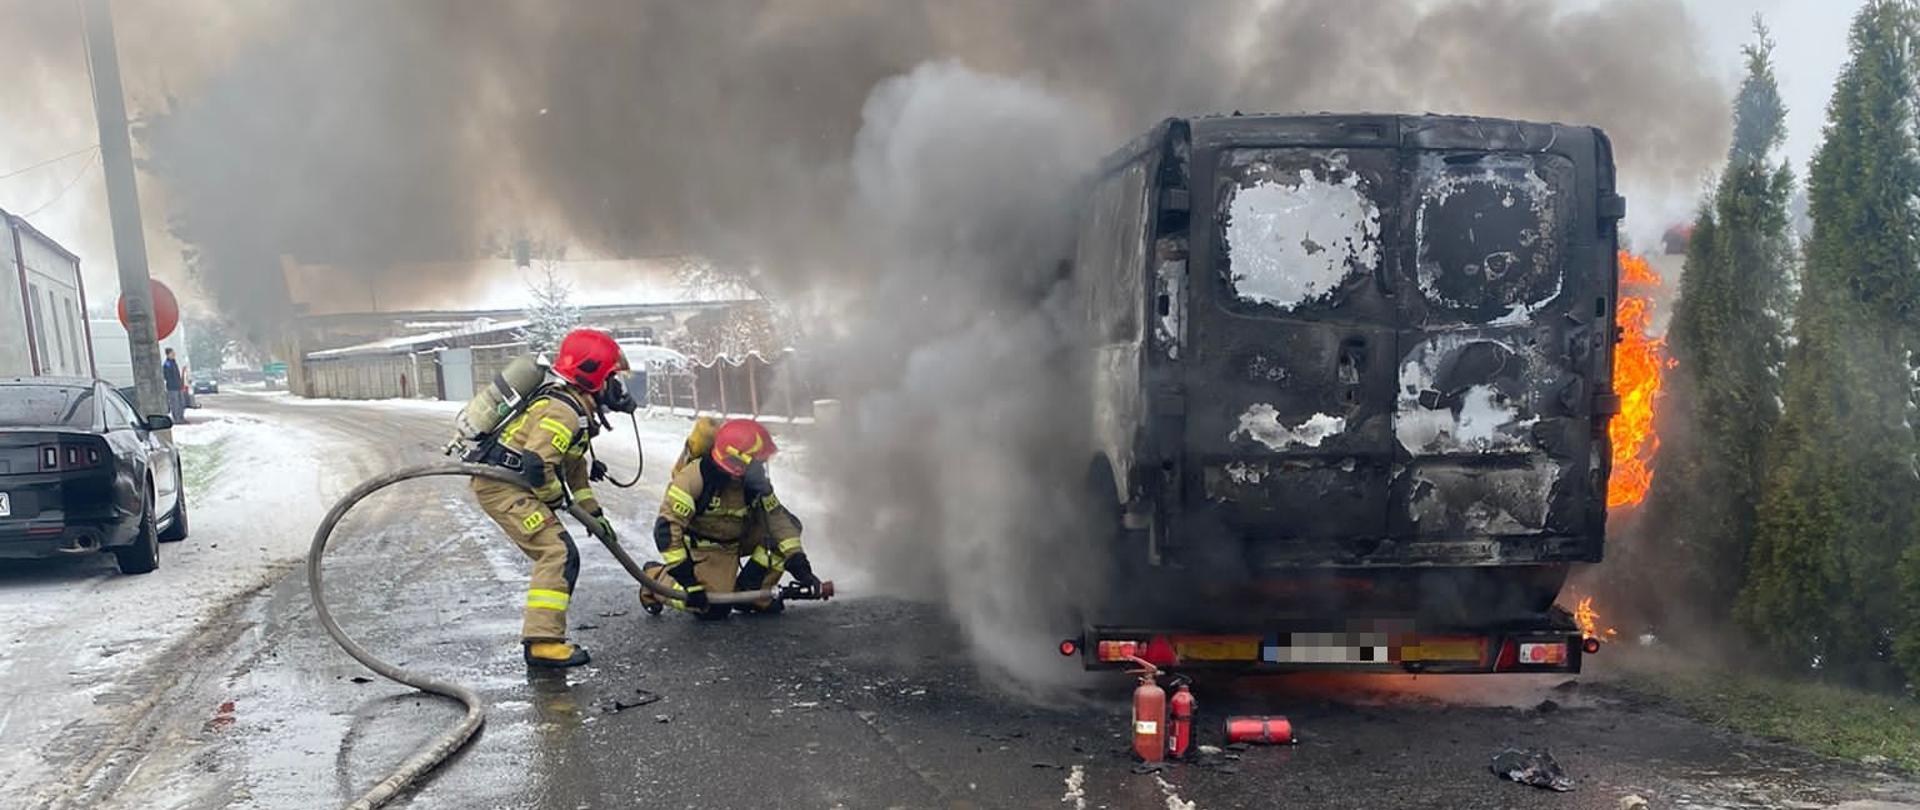 Na auto lawecie stoi płonący samochód typu bus przy nim dwóch strażaków gasi płonący samochód z boku widoczne płomienie oraz drzewka nad samochodem kłęby dymu